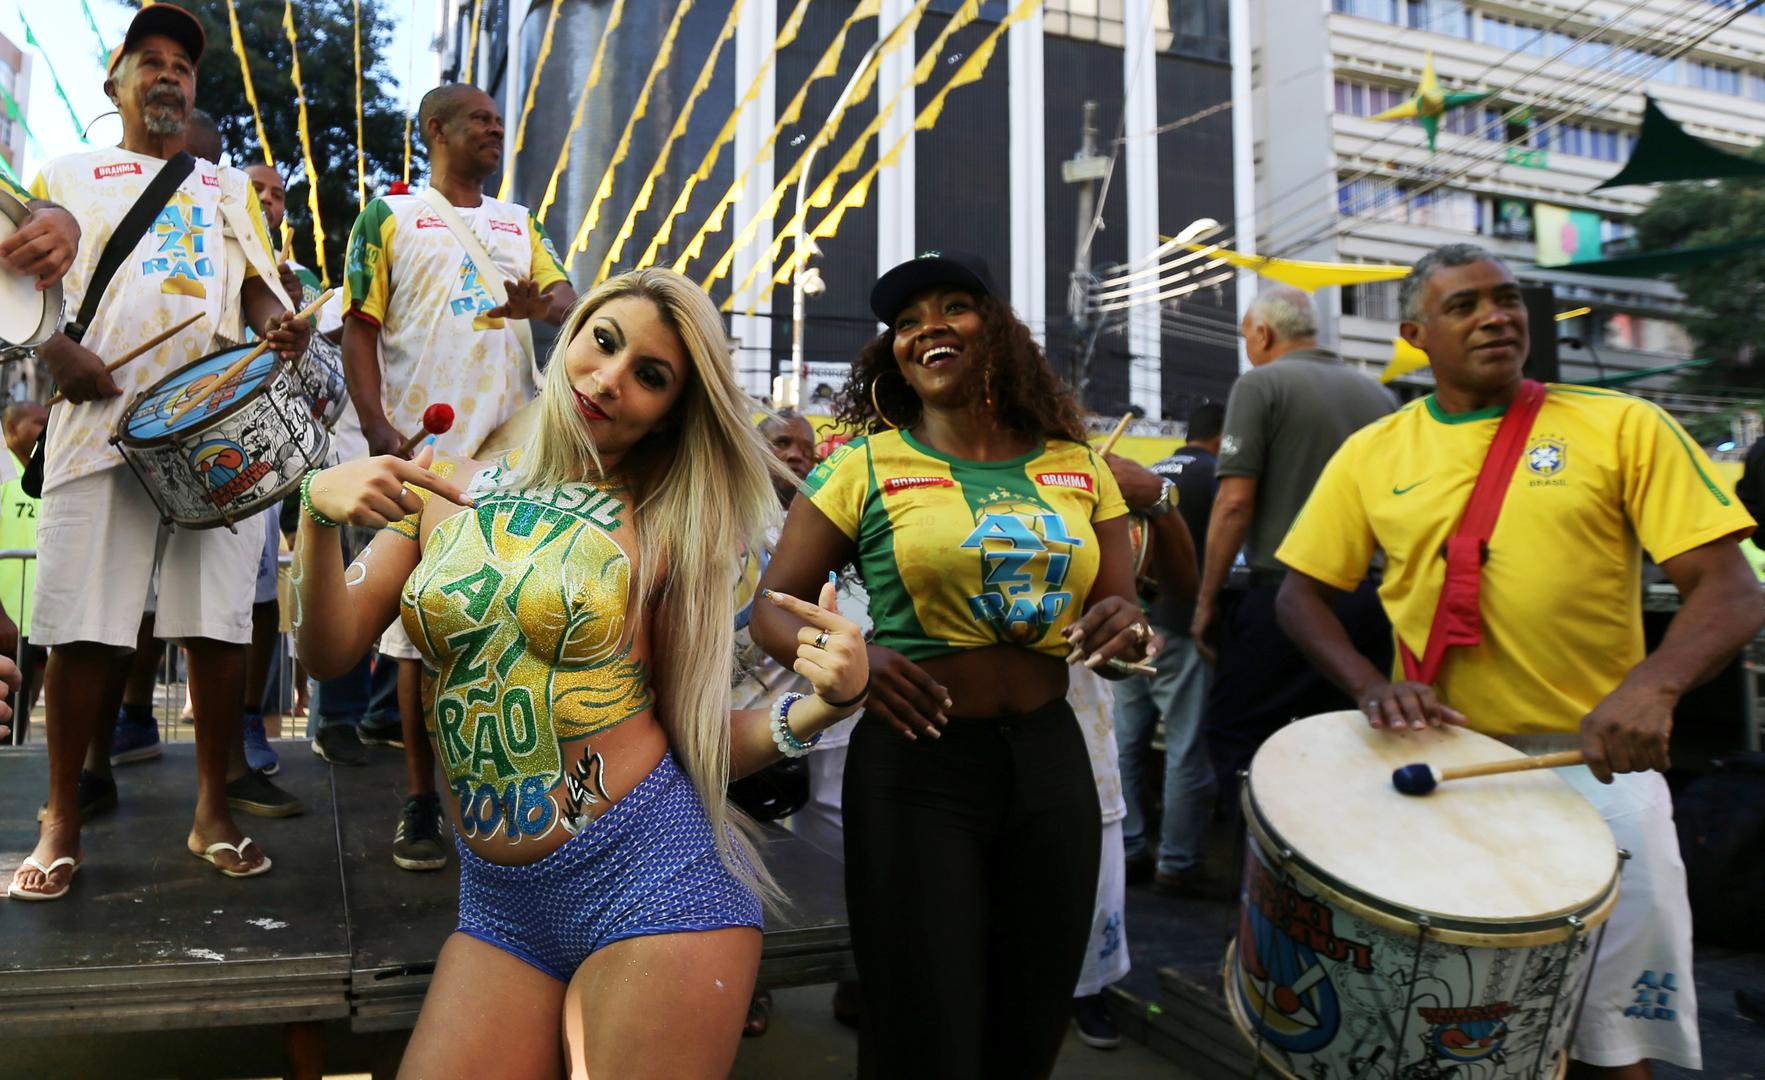 Brazil je stigao do prve pobjede na Svjetskom prvenstvu, u St. Peterburgu su s 2:0 pobijedili Kostariku.

